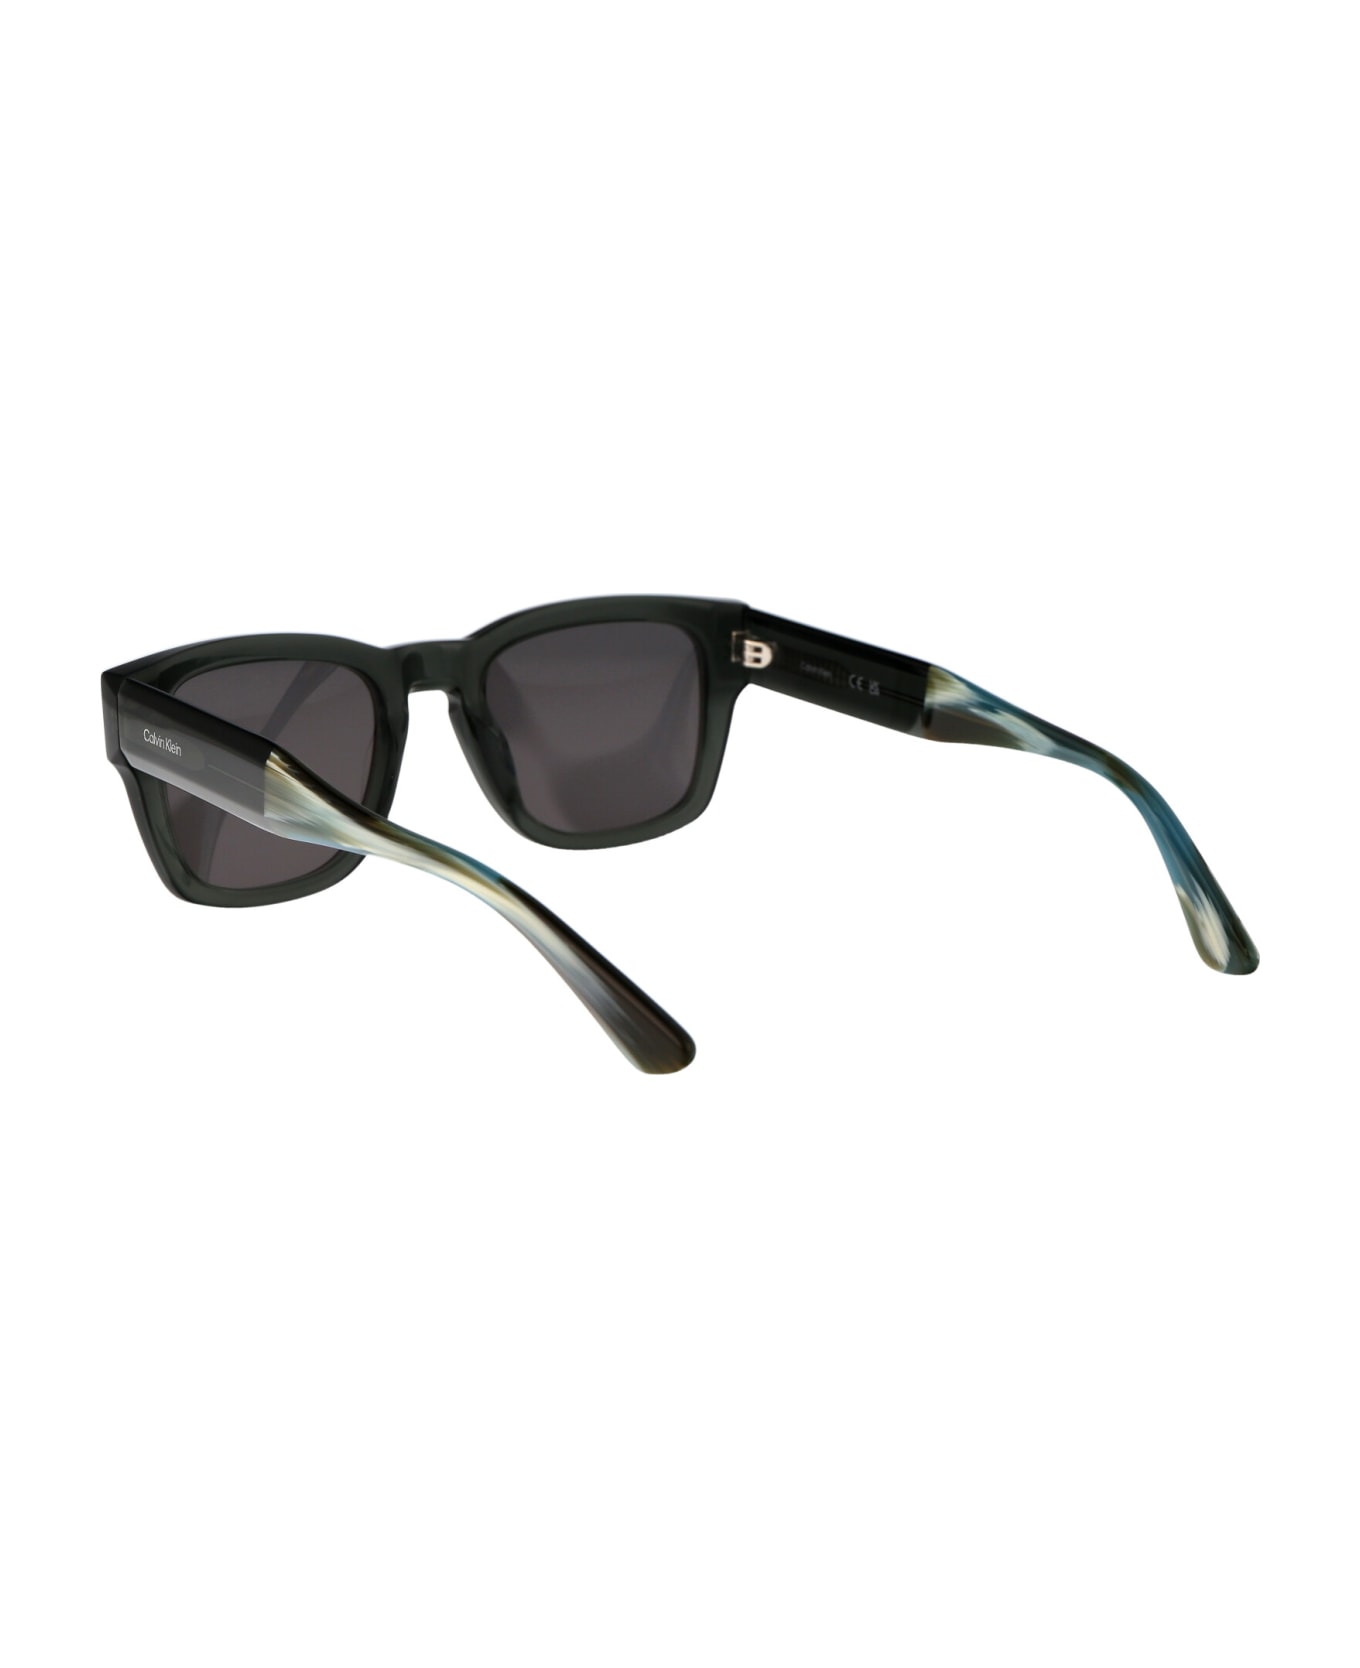 Calvin Klein Ck23539s Sunglasses - 035 GREY サングラス